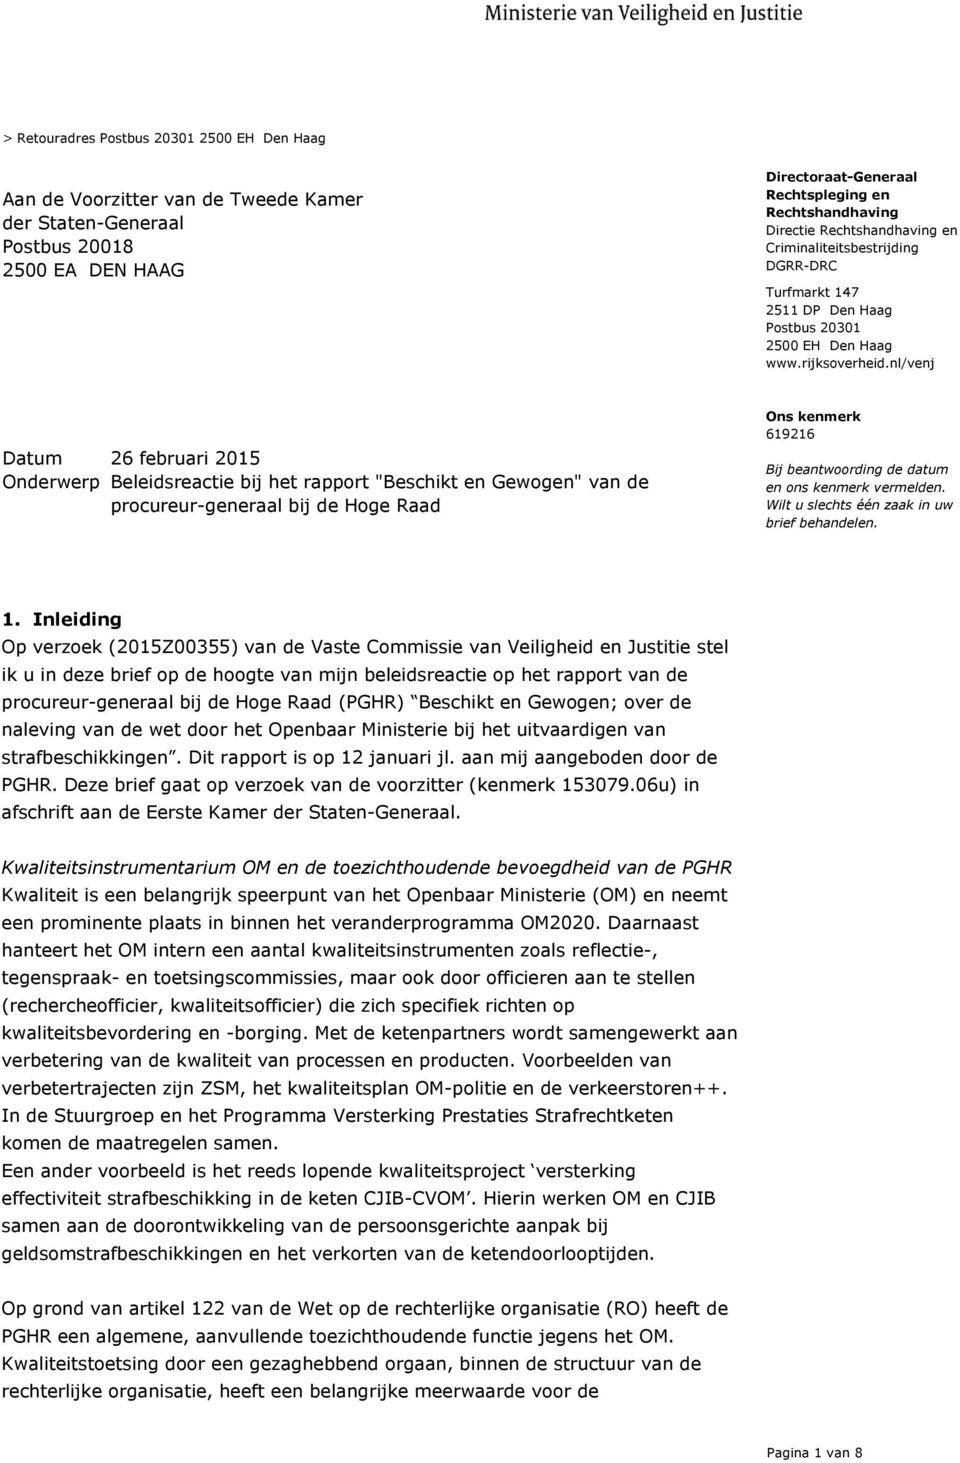 nl/venj 26 februari 2015 Onderwerp Beleidsreactie bij het rapport "Beschikt en Gewogen" van de procureur-generaal bij de Hoge Raad Bij beantwoording de datum en ons kenmerk vermelden.